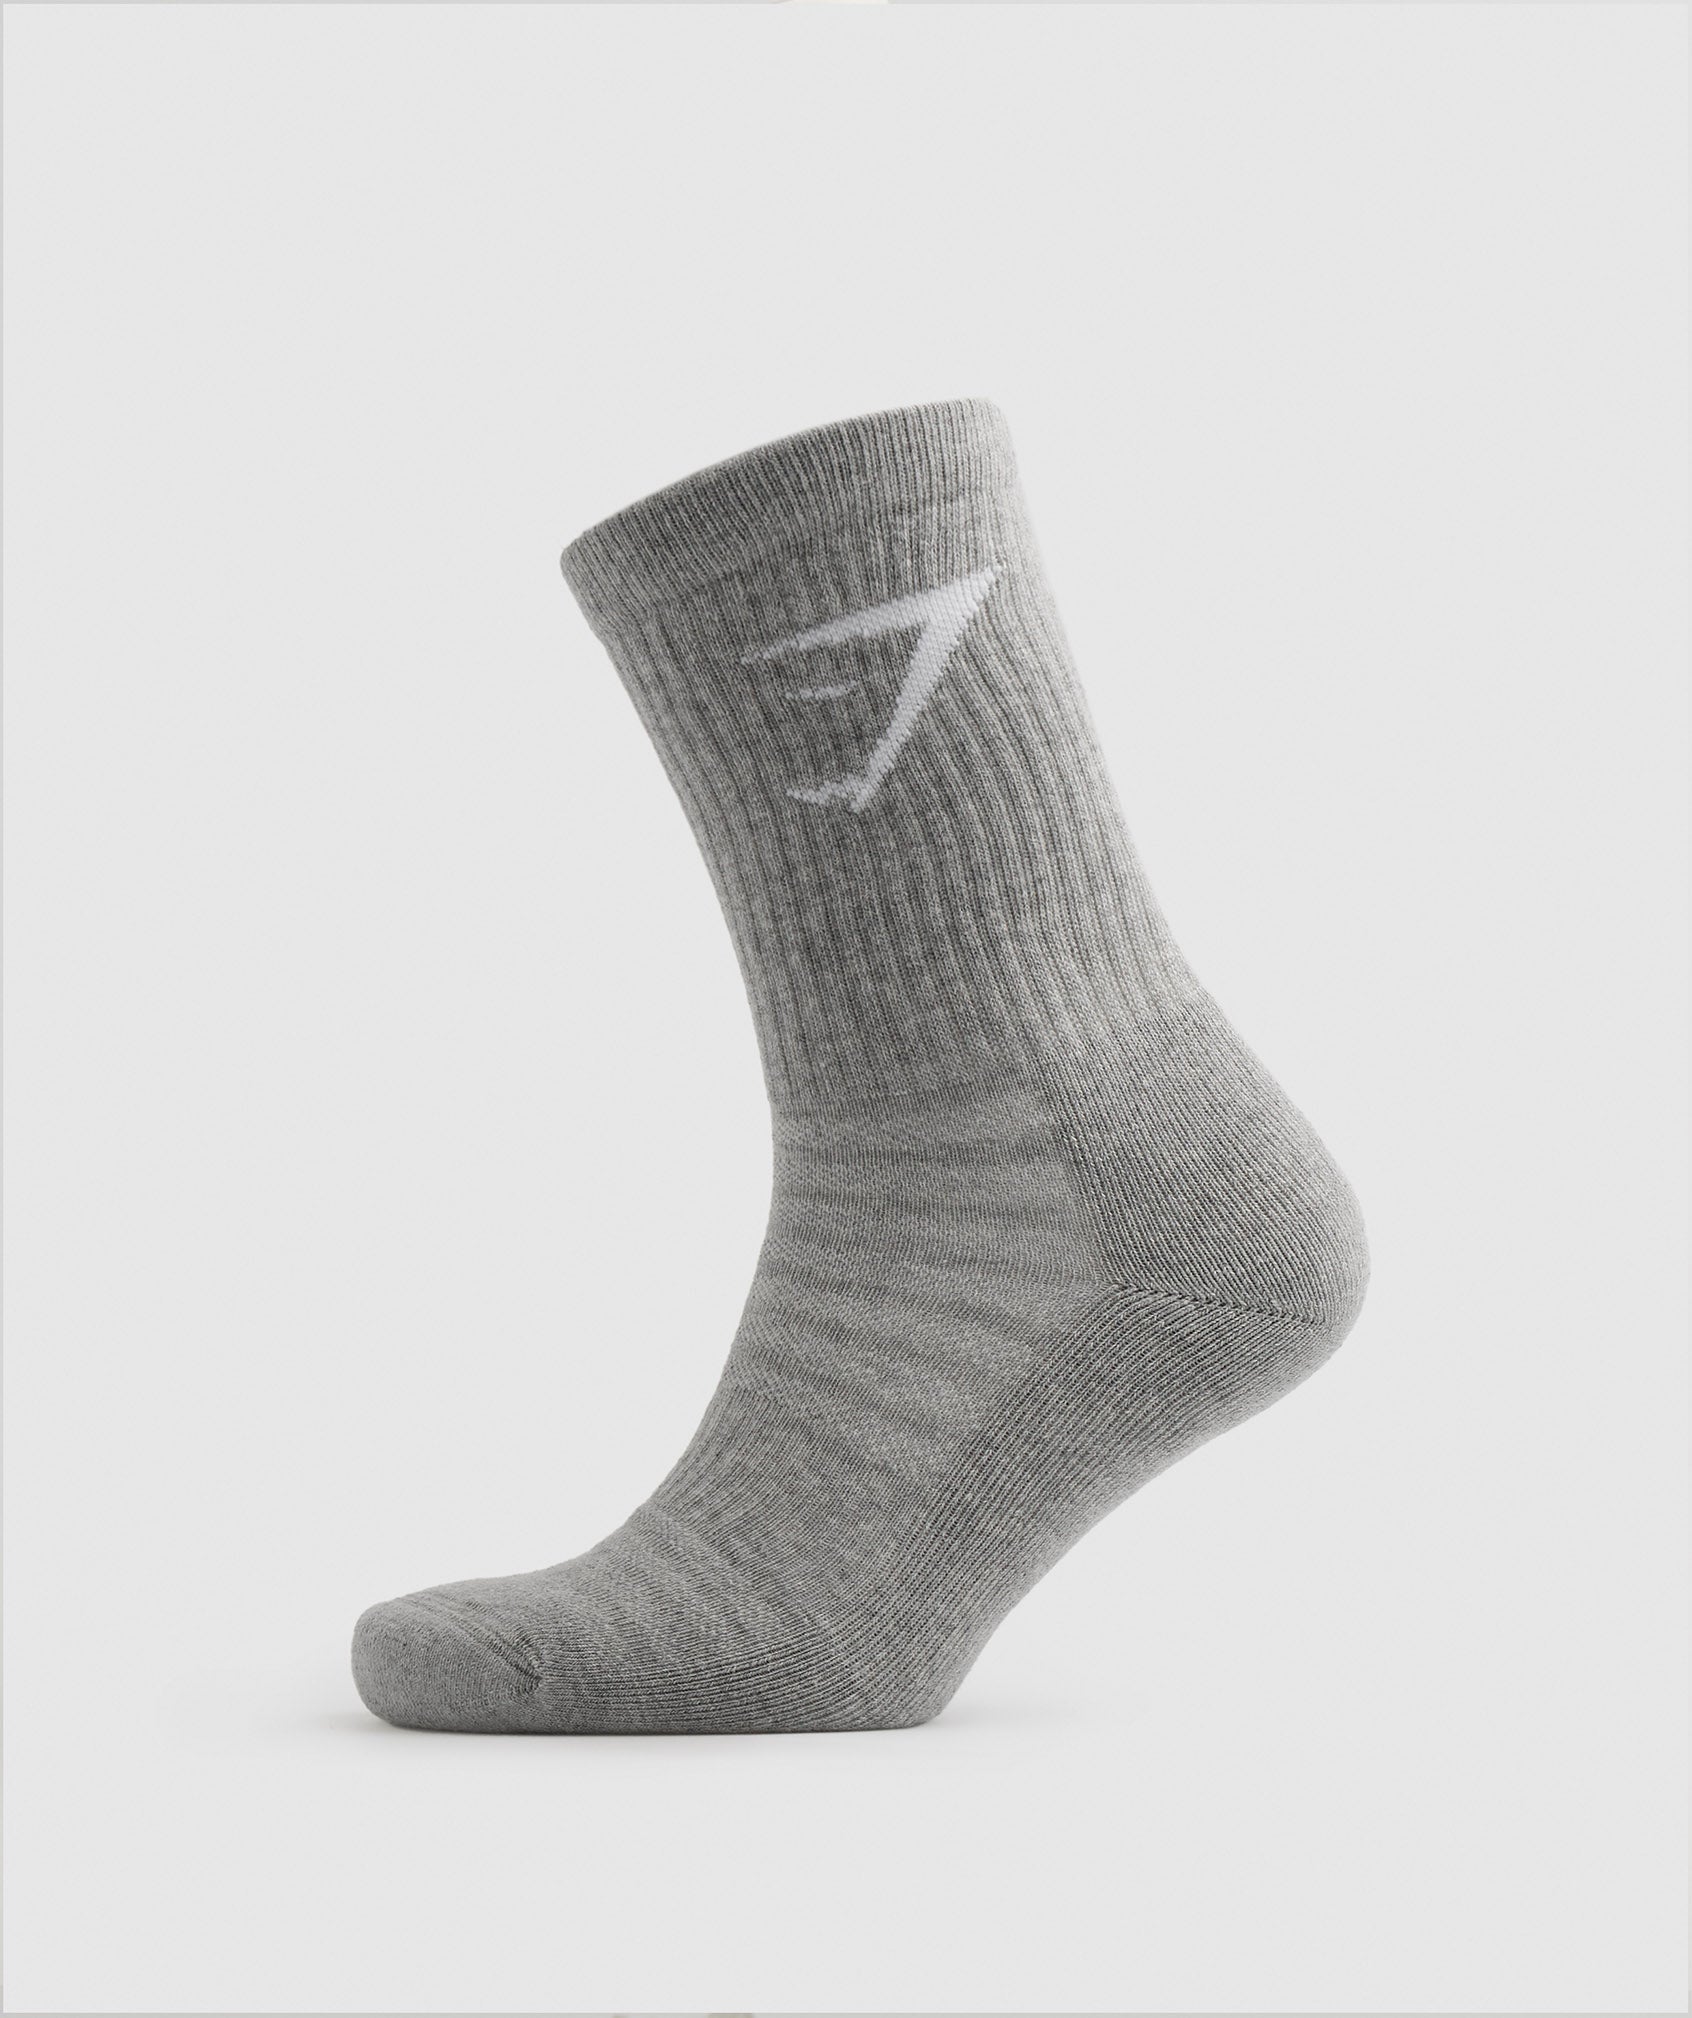 Crew Socks 5pk in White/Black/Grey/Blue/Navy - view 6